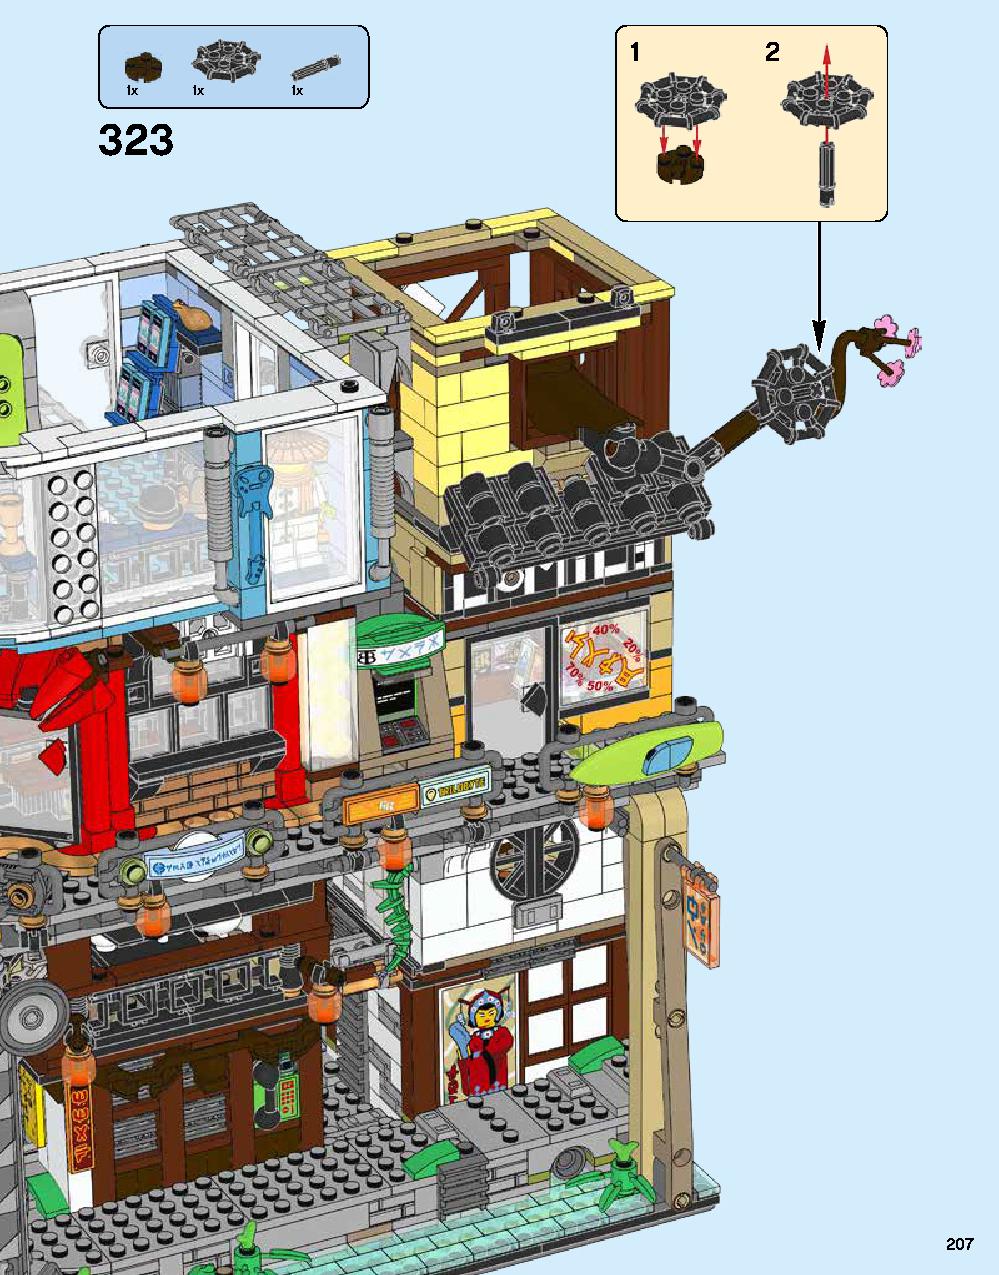 ニンジャゴー シティ 70620 レゴの商品情報 レゴの説明書・組立方法 207 page